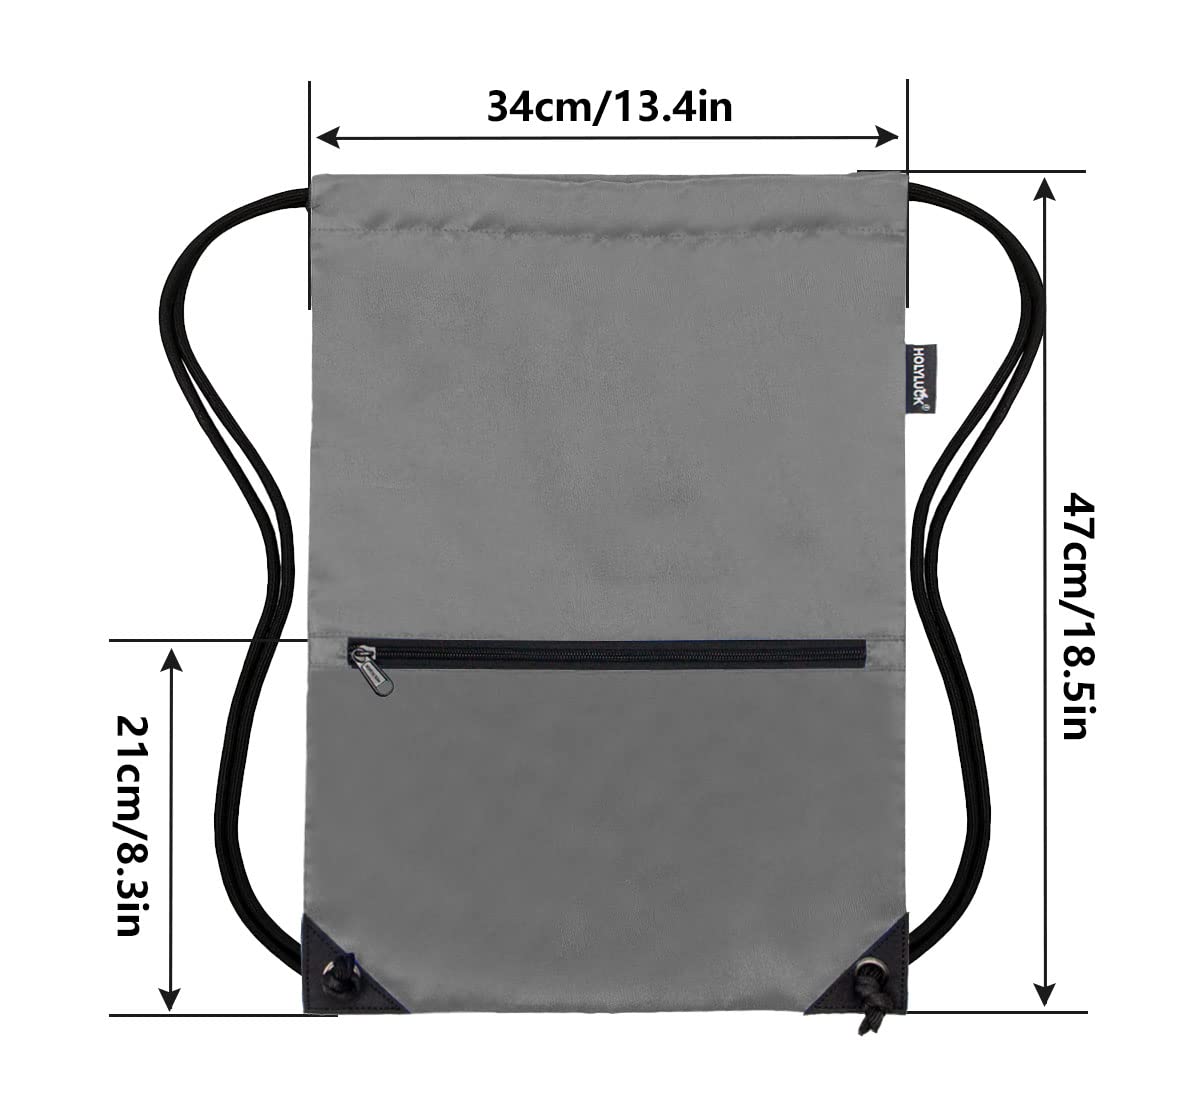 Drawstring Backpack Bag Sport Gym Sackpack  Dark Grey HLC001